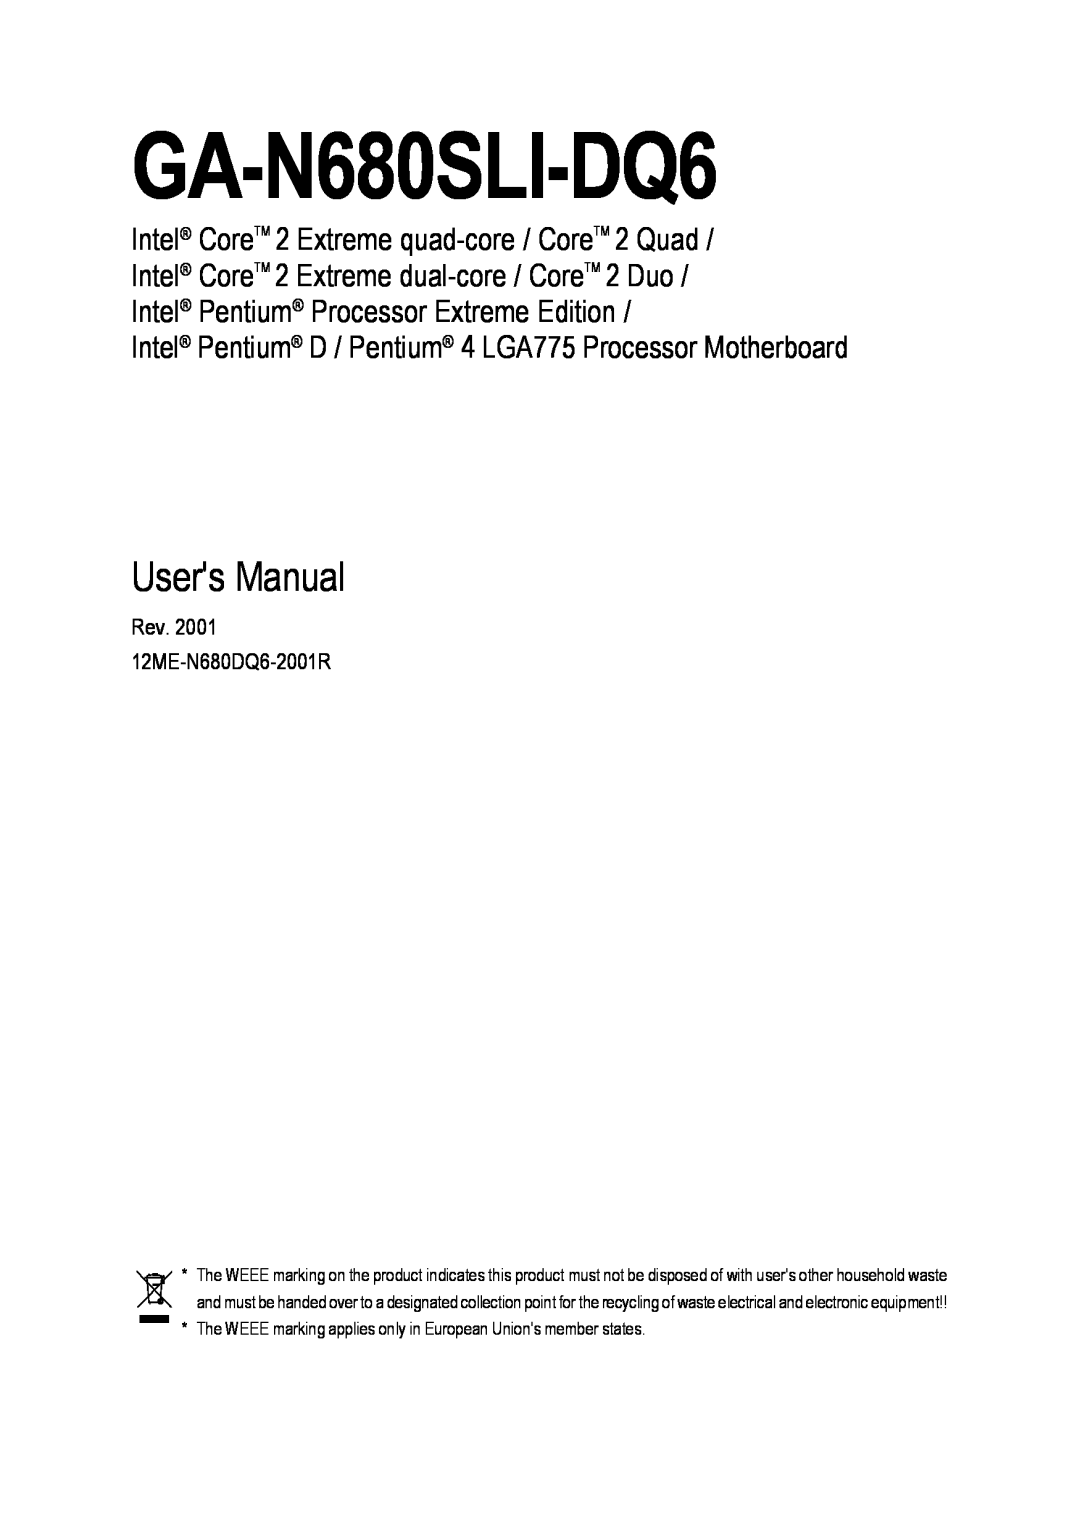 Intel GA-N680SLI-DQ6 user manual Users Manual, Intel Pentium D / Pentium 4 LGA775 Processor Motherboard 